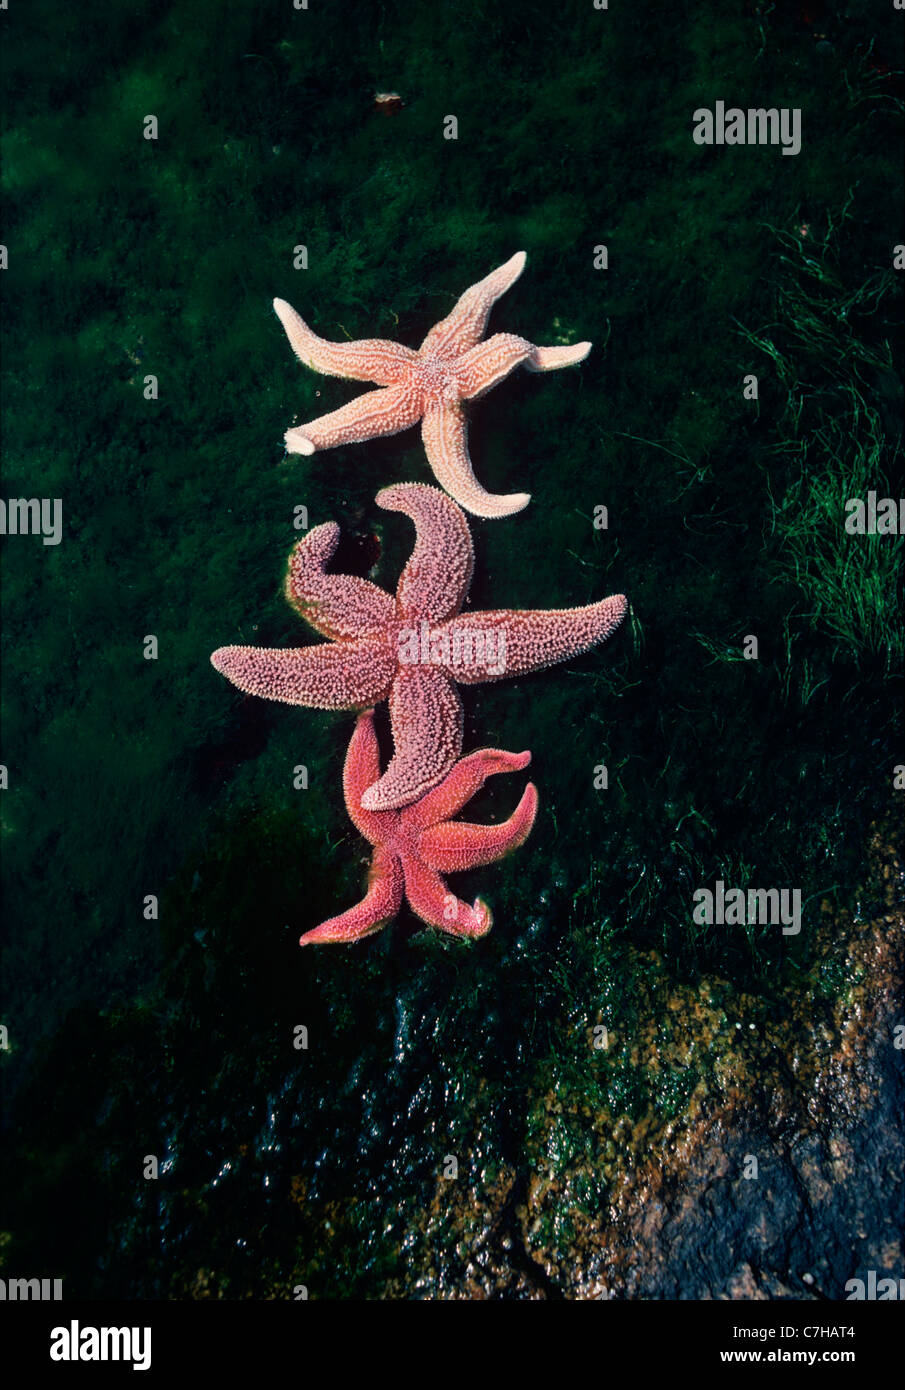 Le nord de l'étoile de mer (Asterias vulgaris) et une étoile de mer (Asterias rubens) à marée basse. Gloucester, New England Banque D'Images